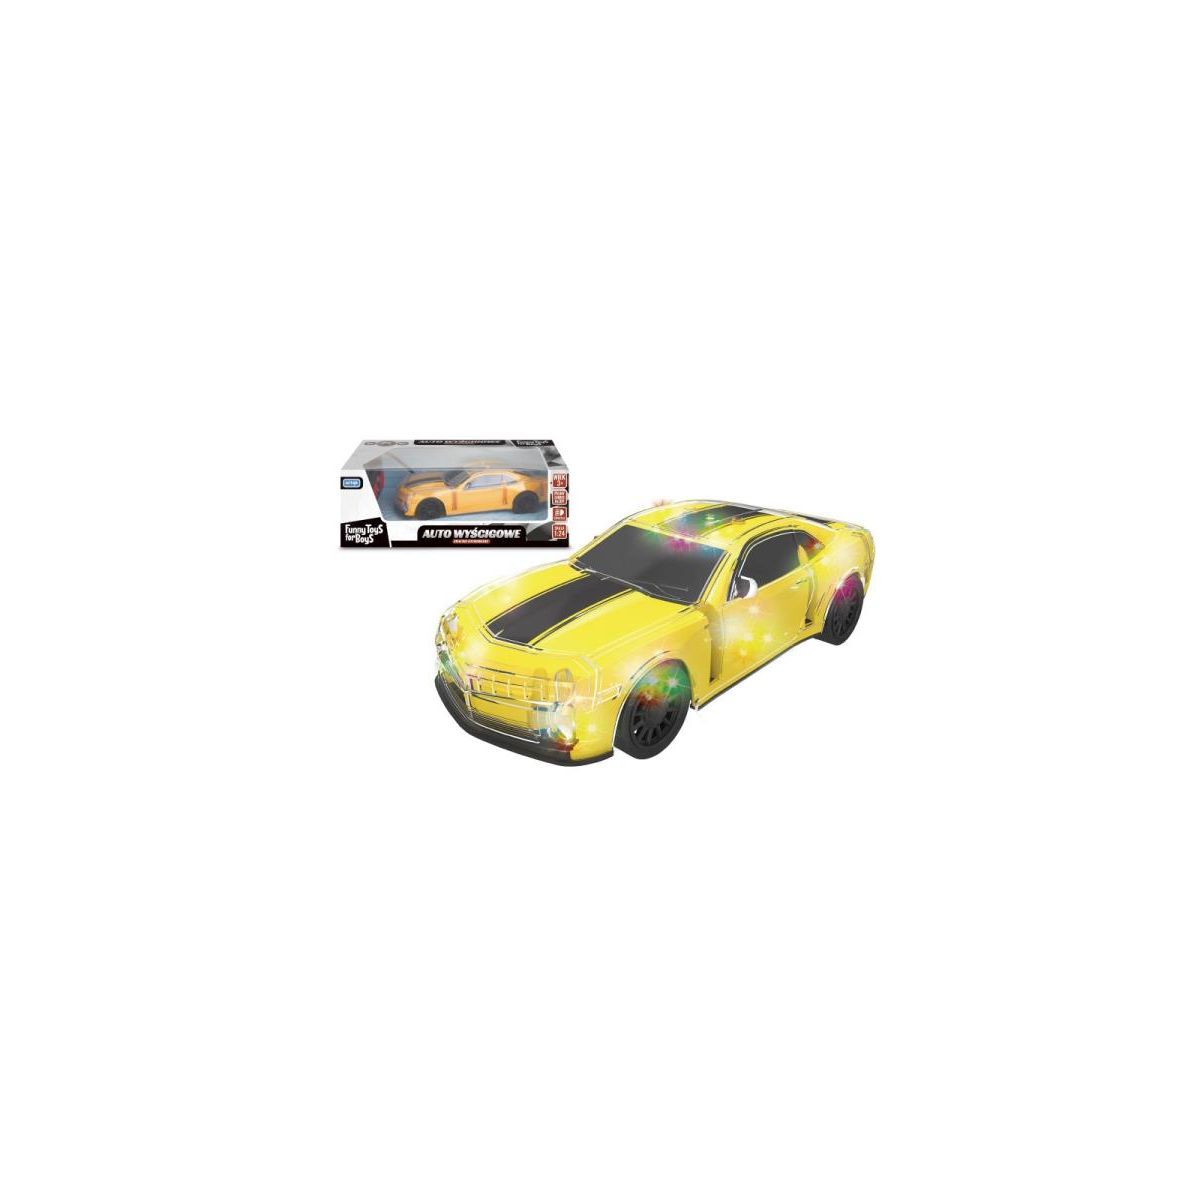 Samochód Toys for Boys wyścigowy zdalnie sterowany Artyk (127830)